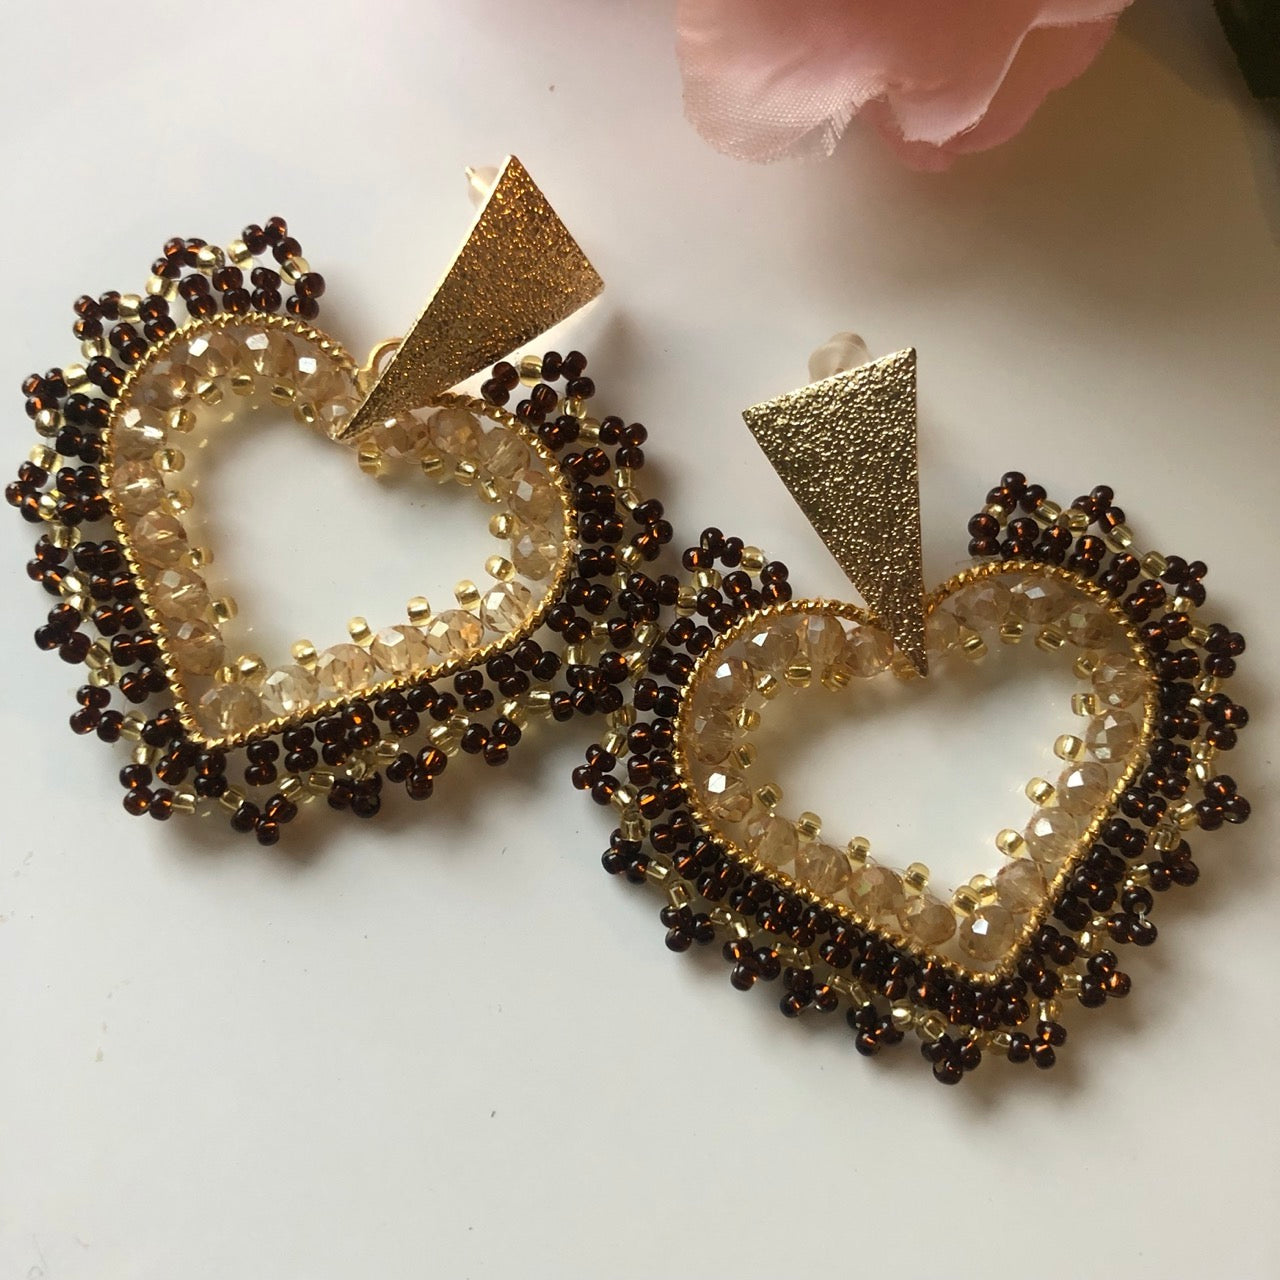 Handmade Woven Heart Shape Earrings